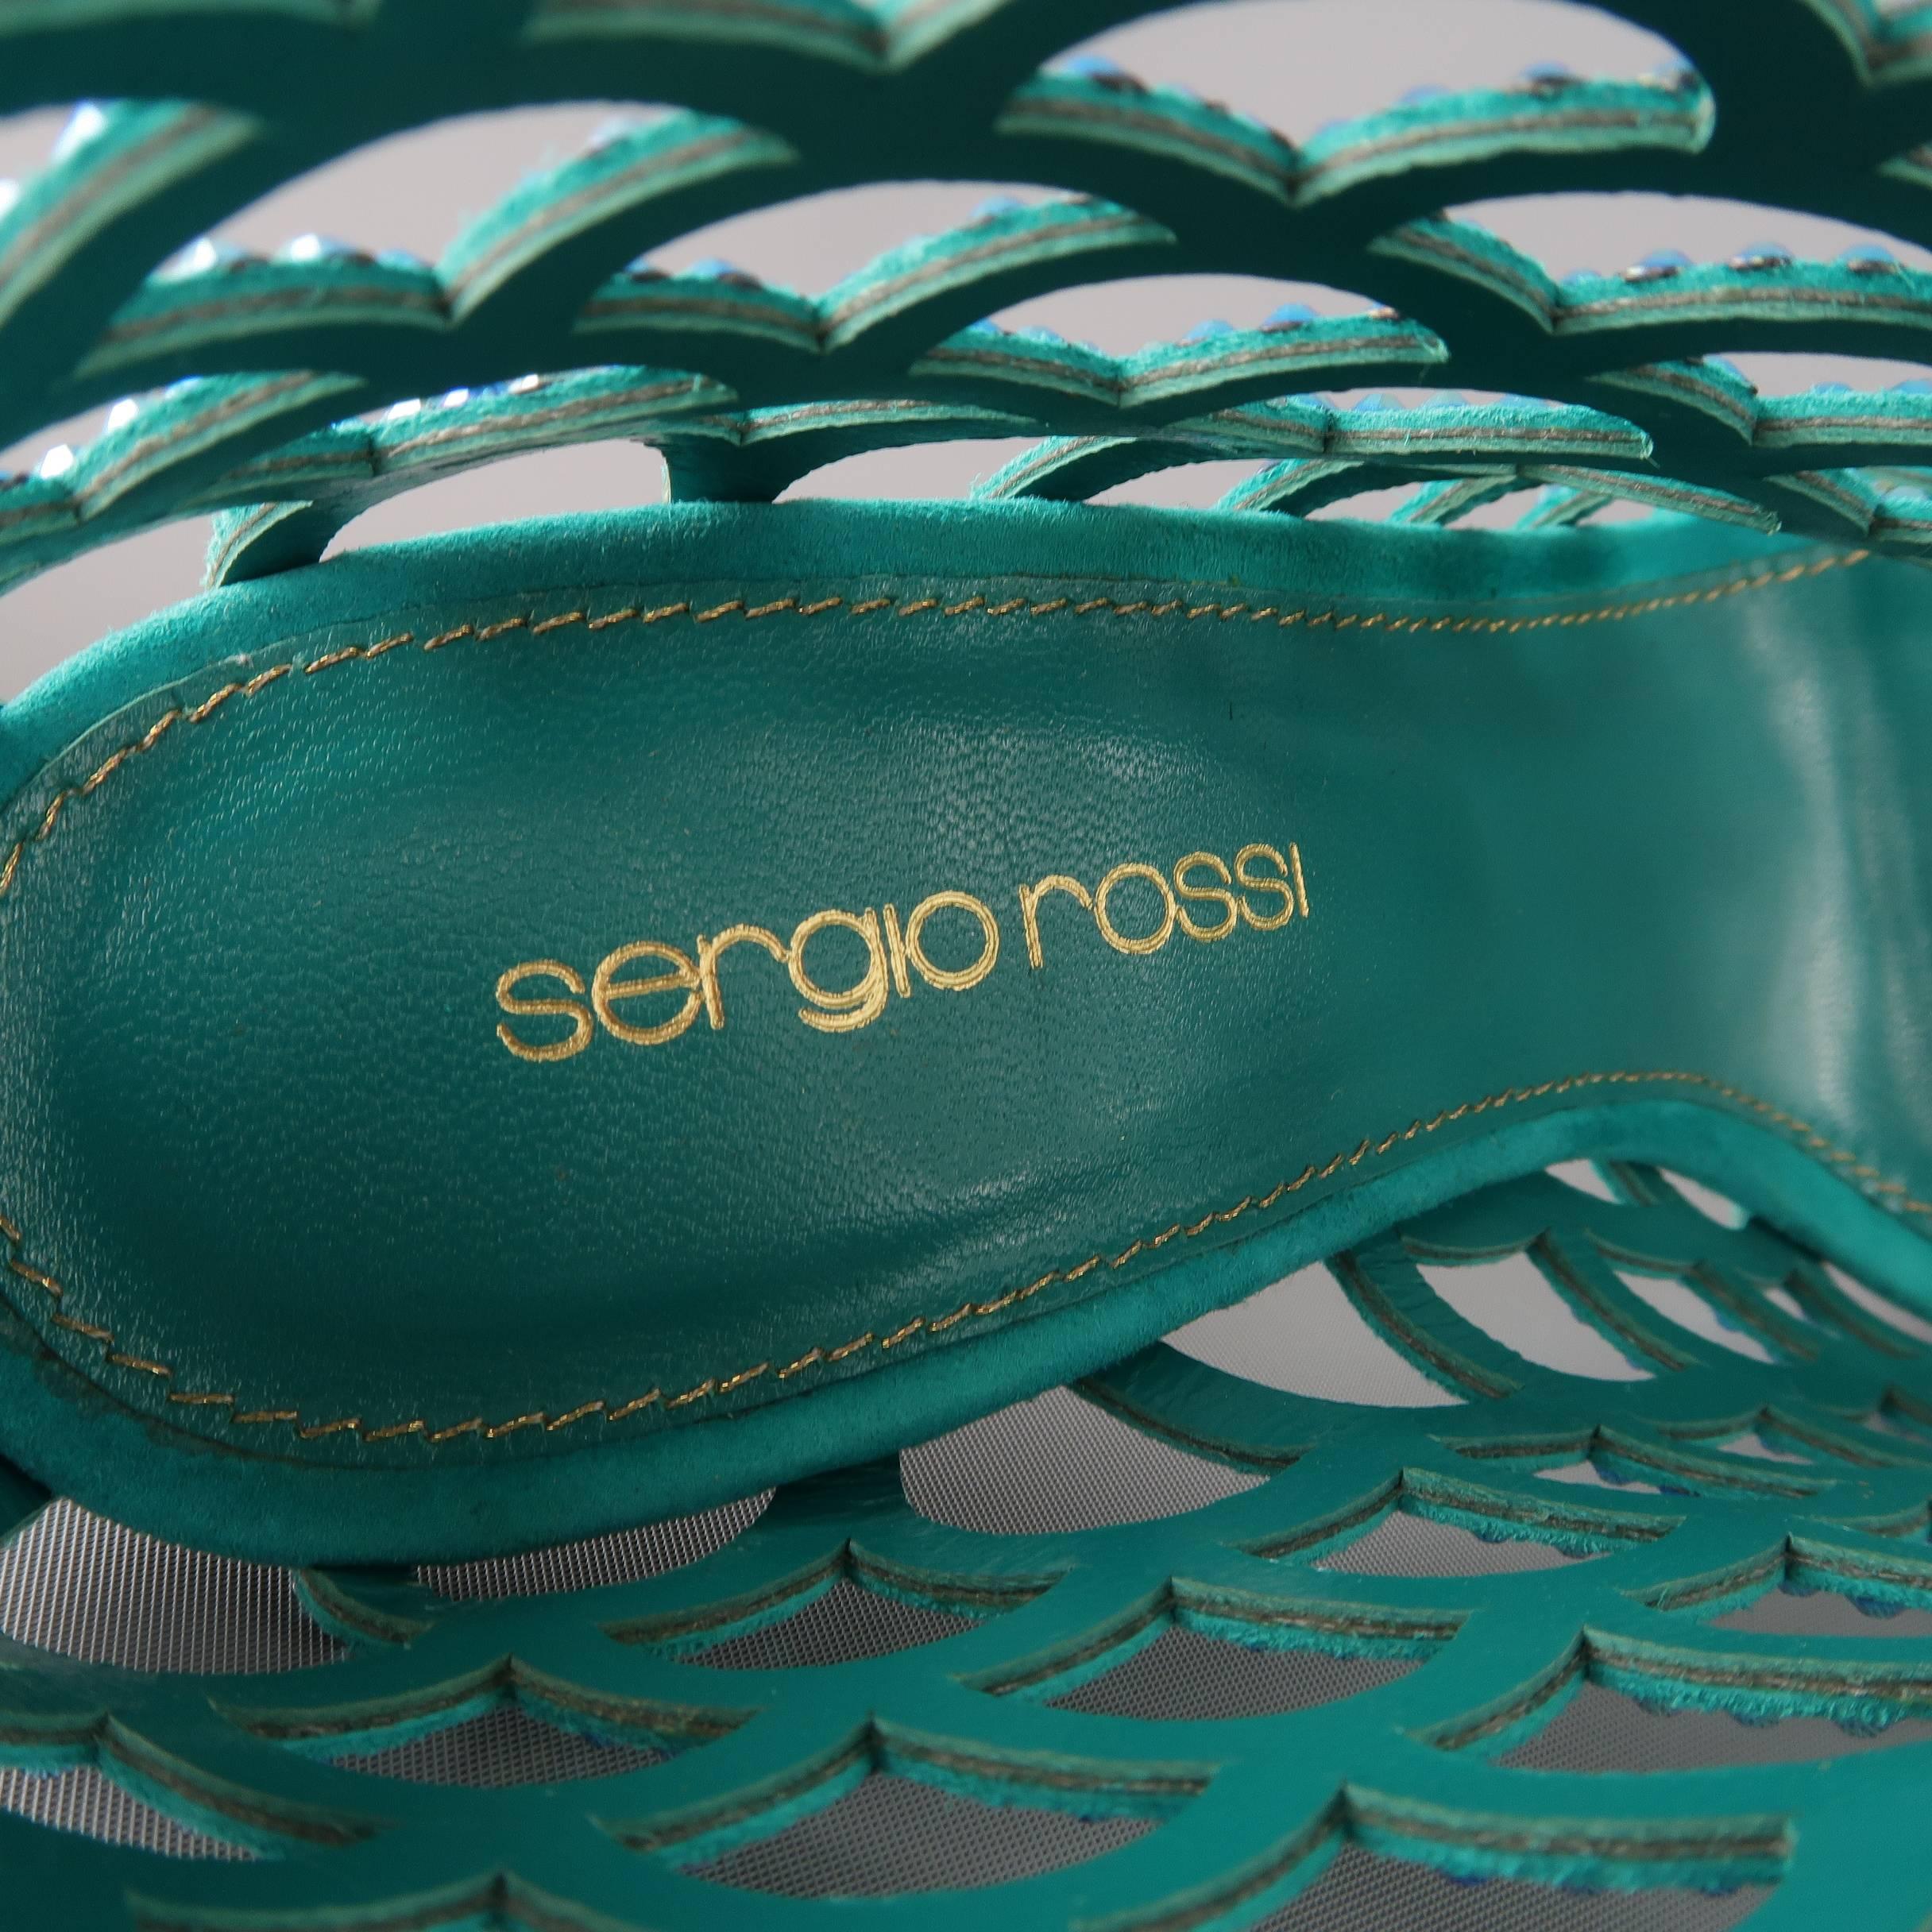 Women's SERGIO ROSSI Size 8.5 Aqua Rhinestone Suede Peep Toe Cage Mermaid Sandals